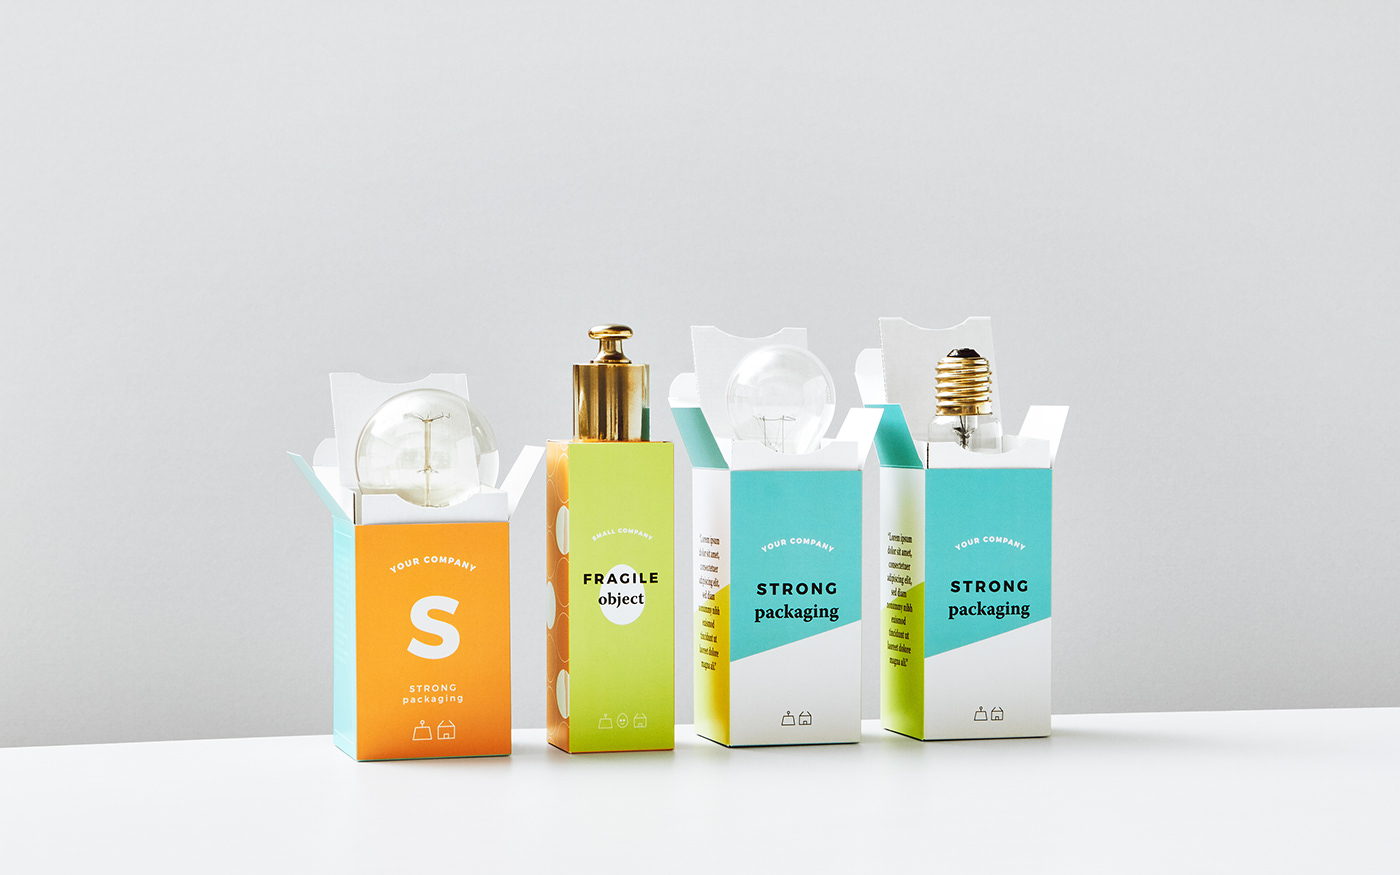 brand brandidentity branding  graphicdesign luxurydesign Packaging packagingdesign perfume Pottery visualidentity